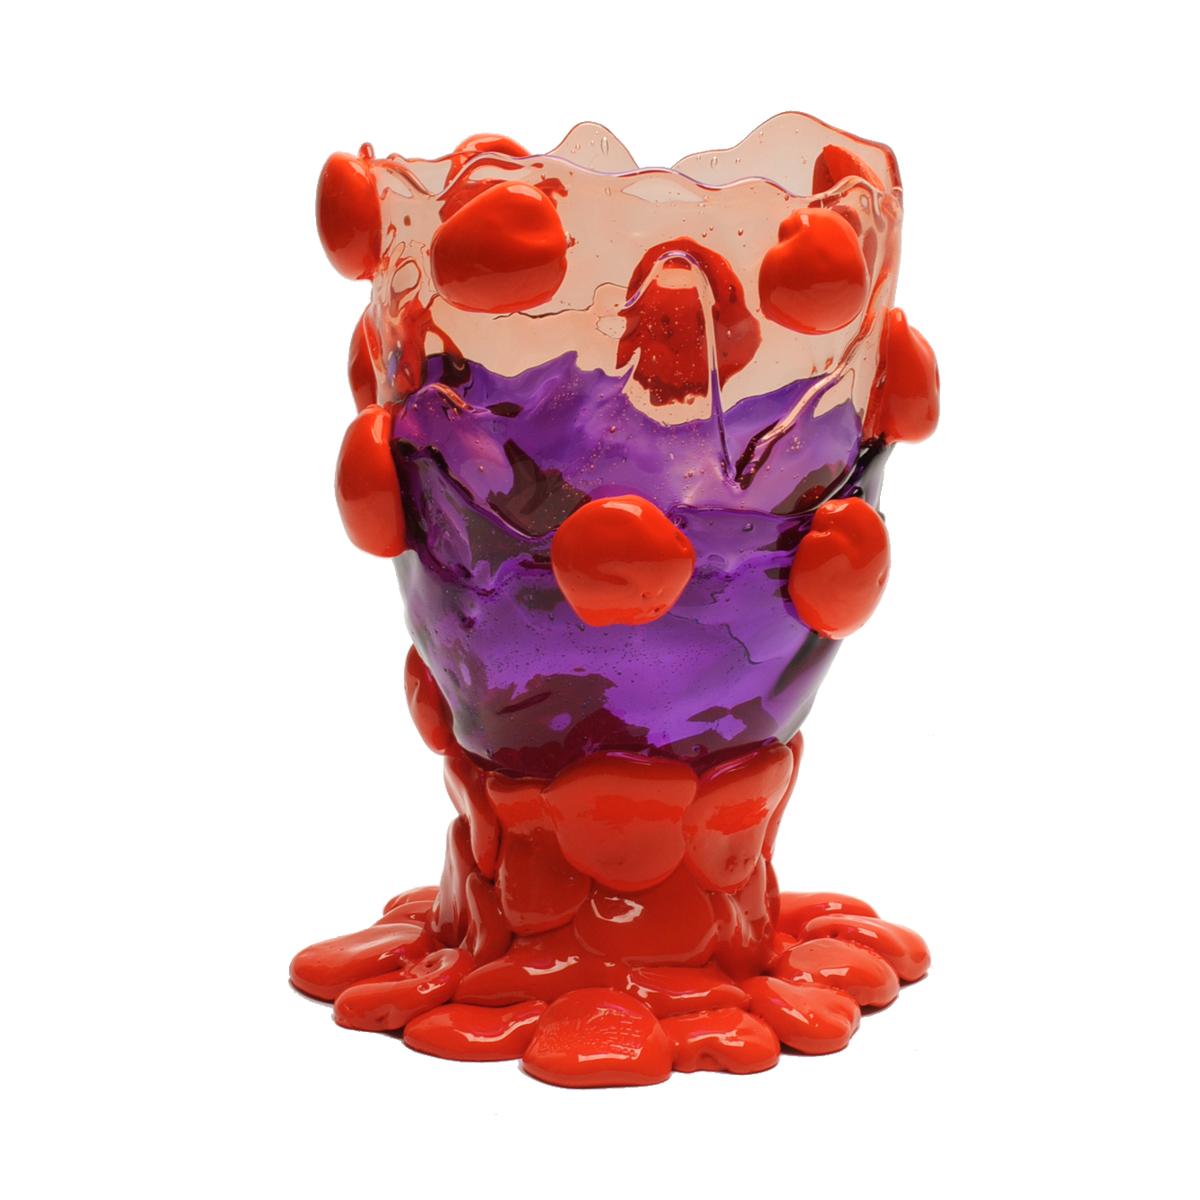 Nugget-Vase, klarer heller Rubin, klar violett, matt orange.
Vase aus weichem Harz, entworfen von Gaetano Pesce im Jahr 1995 für die Collection'S Fish Design.

Maße: M - ø 16cm x H 26cm
Farben: klares helles Rubinrot, klares Violett, mattes